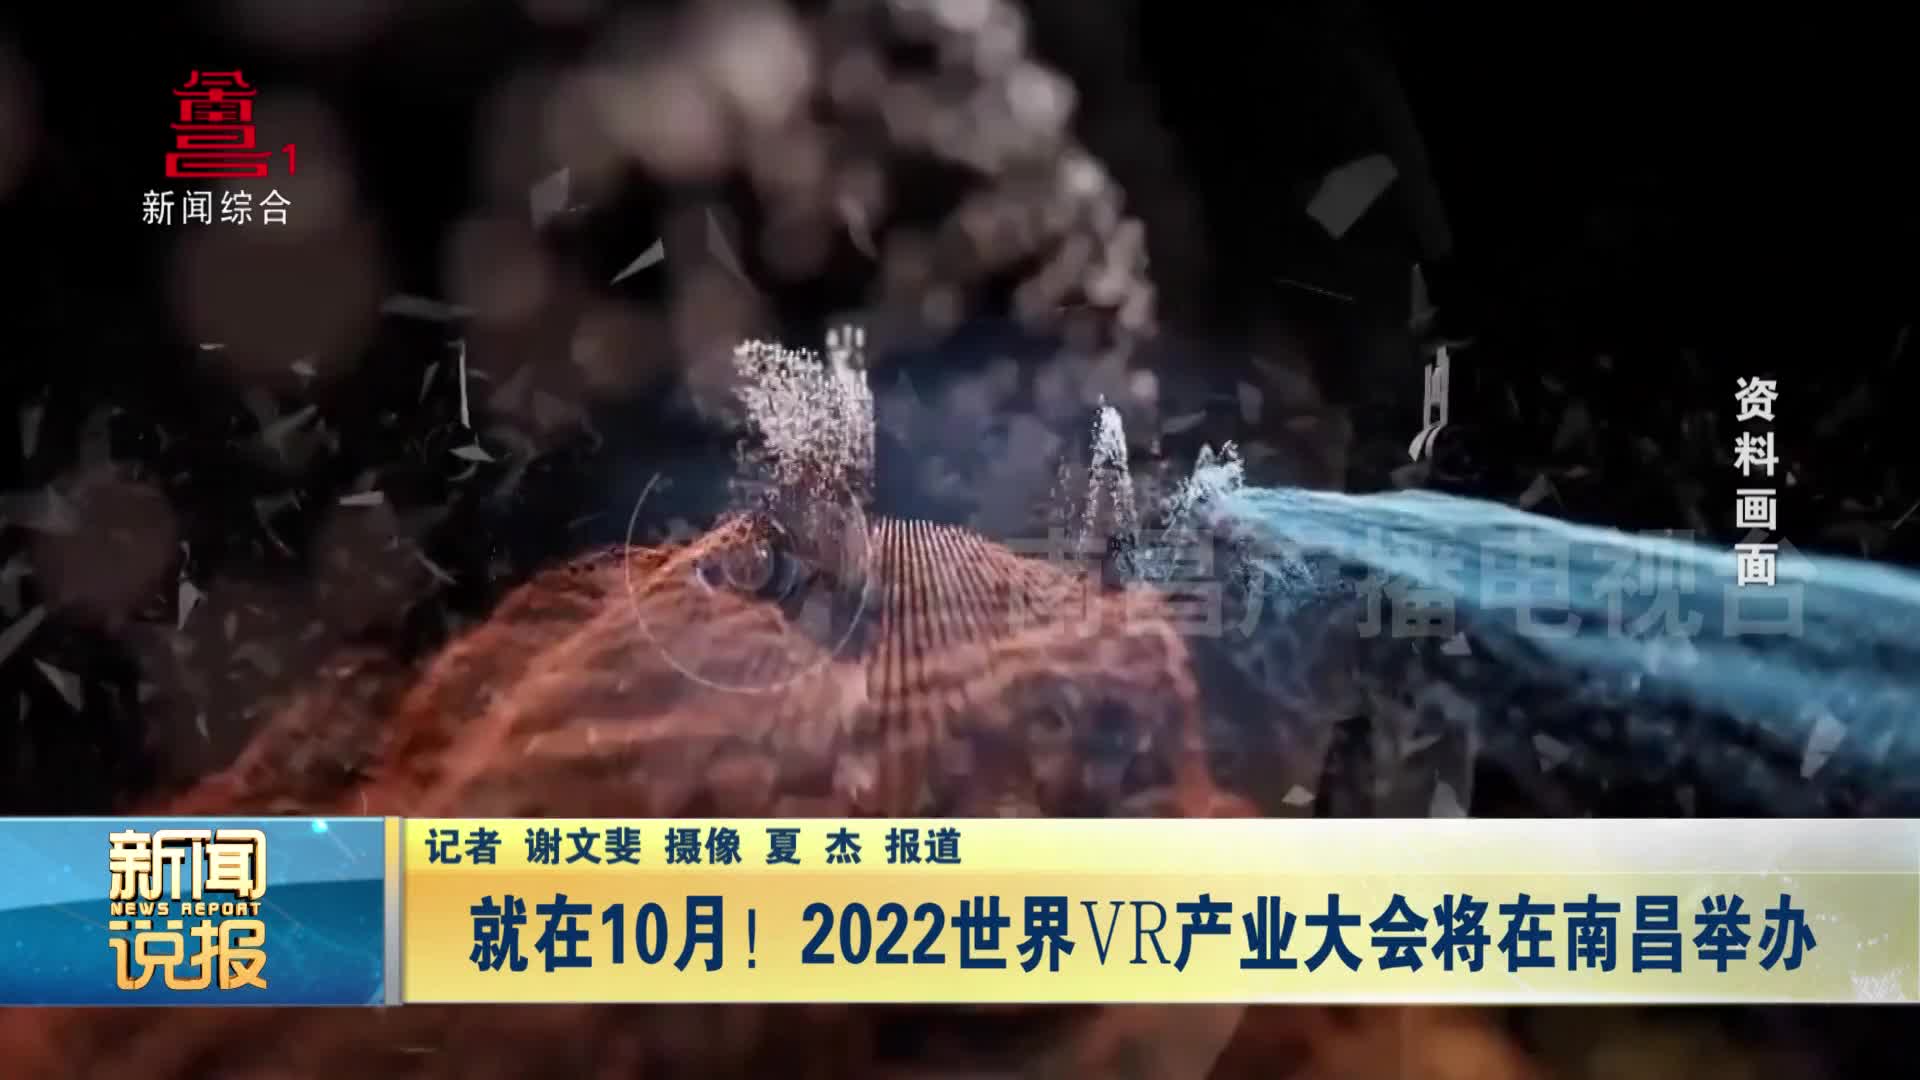 就在10月！2022世界VR产业大会将在南昌举办